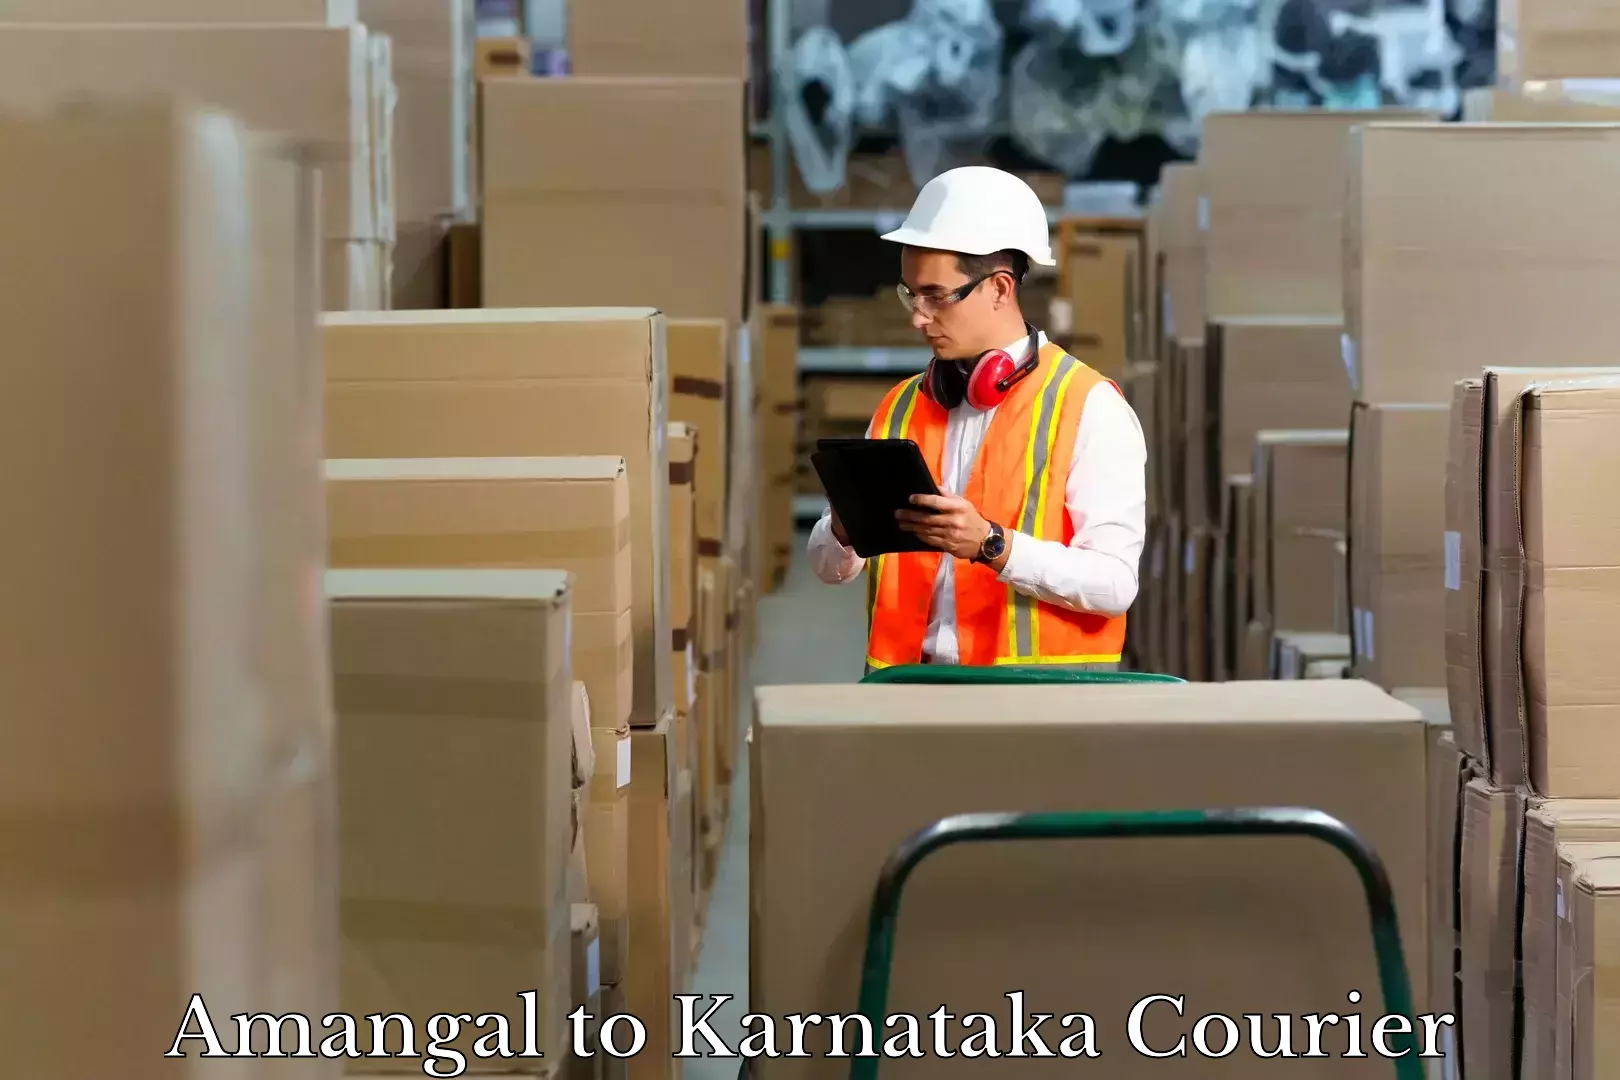 Hassle-free luggage shipping Amangal to Karnataka